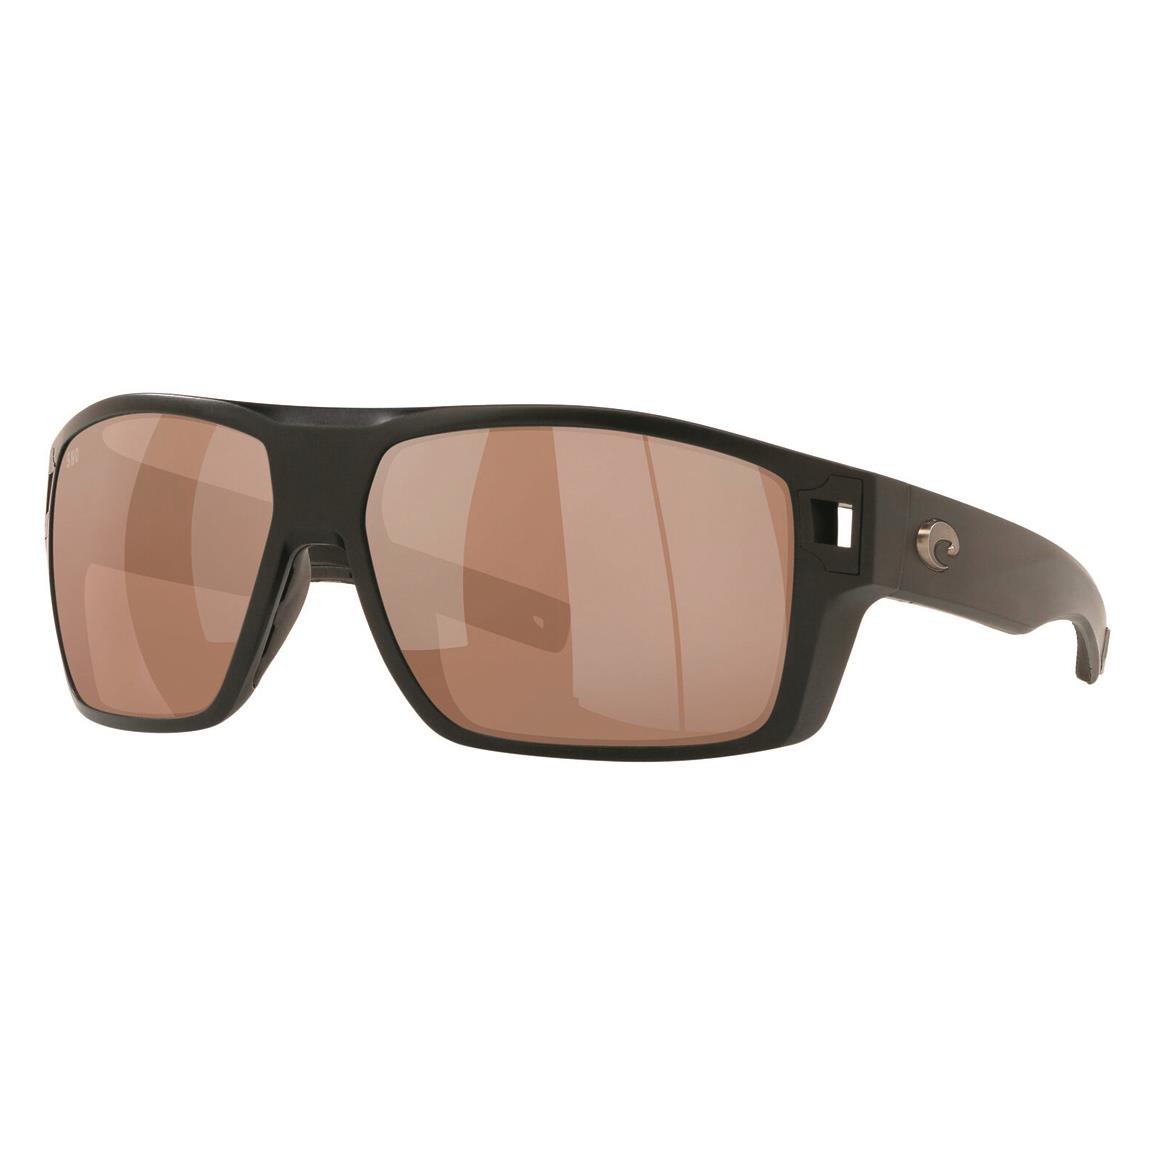 Costa Men's Diego 580G Polarized Sunglasses, Black/silver Mirror